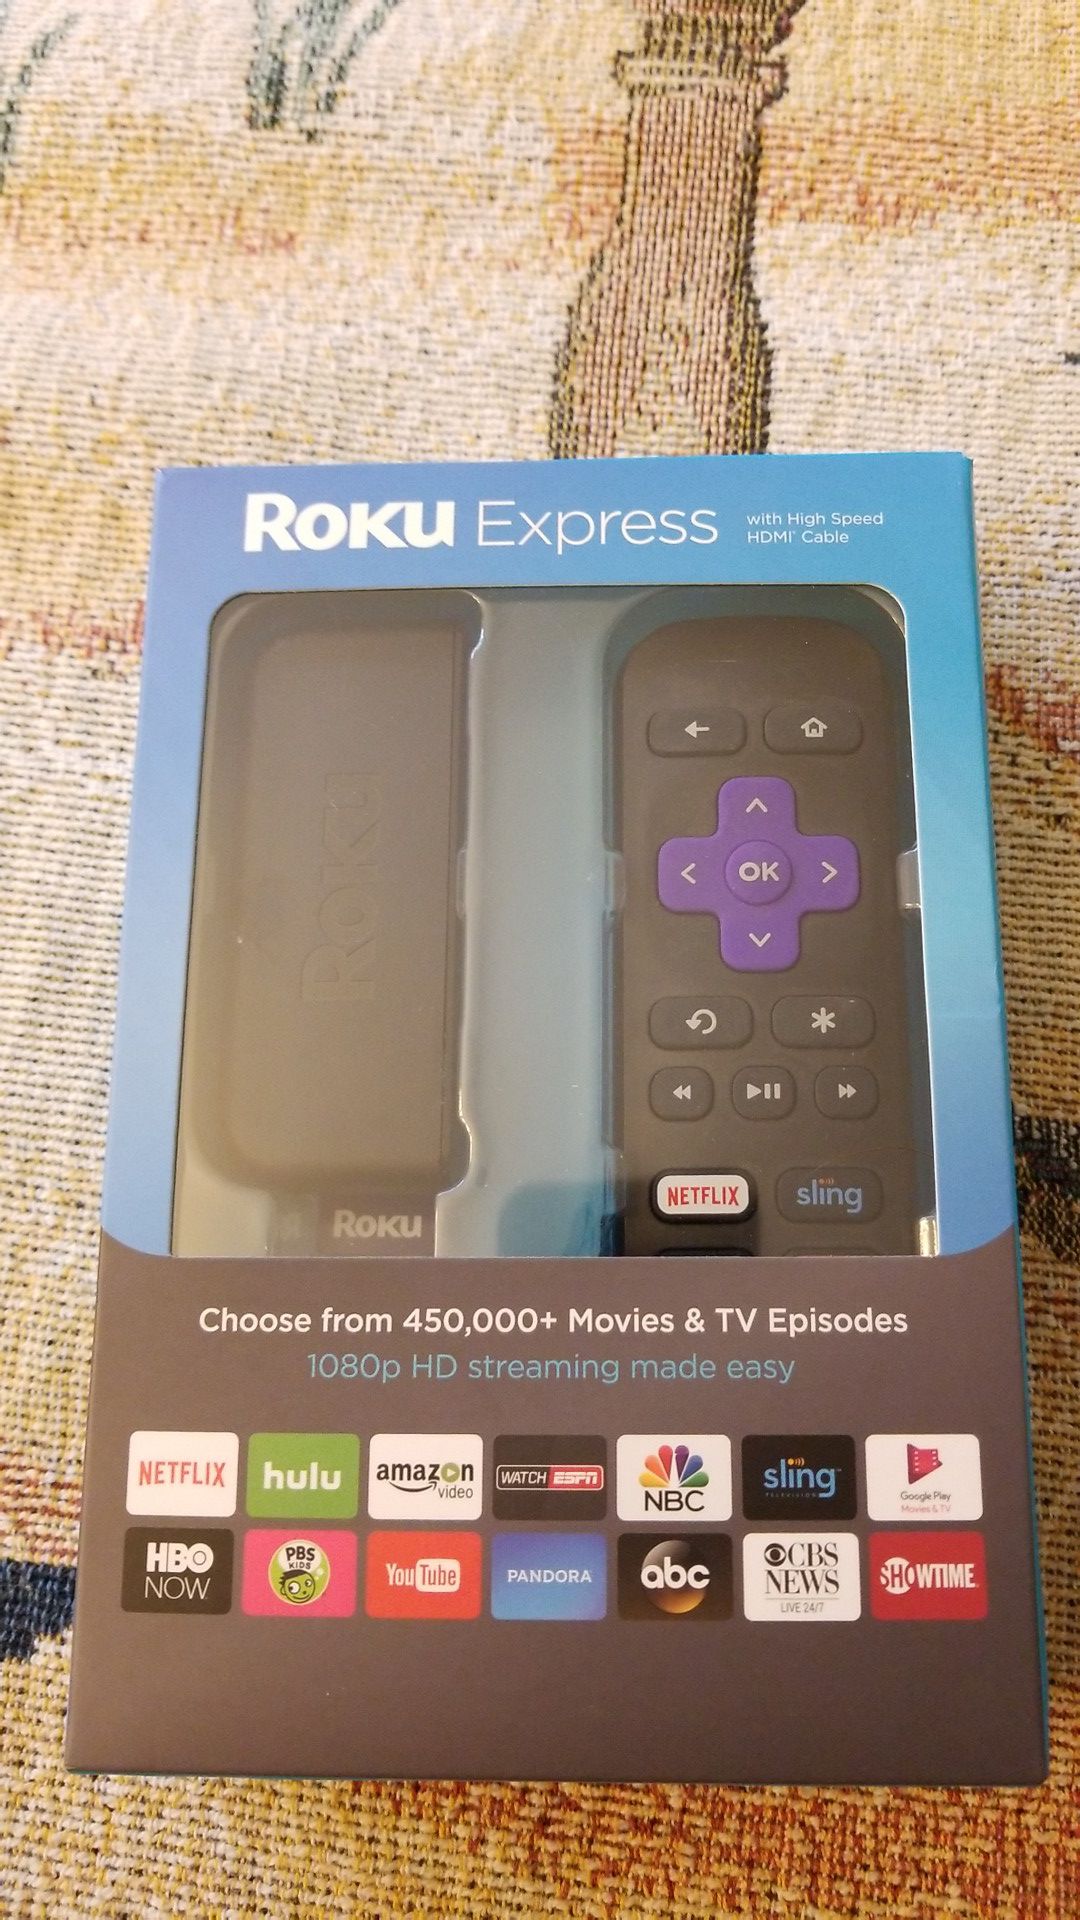 Roku Express - New